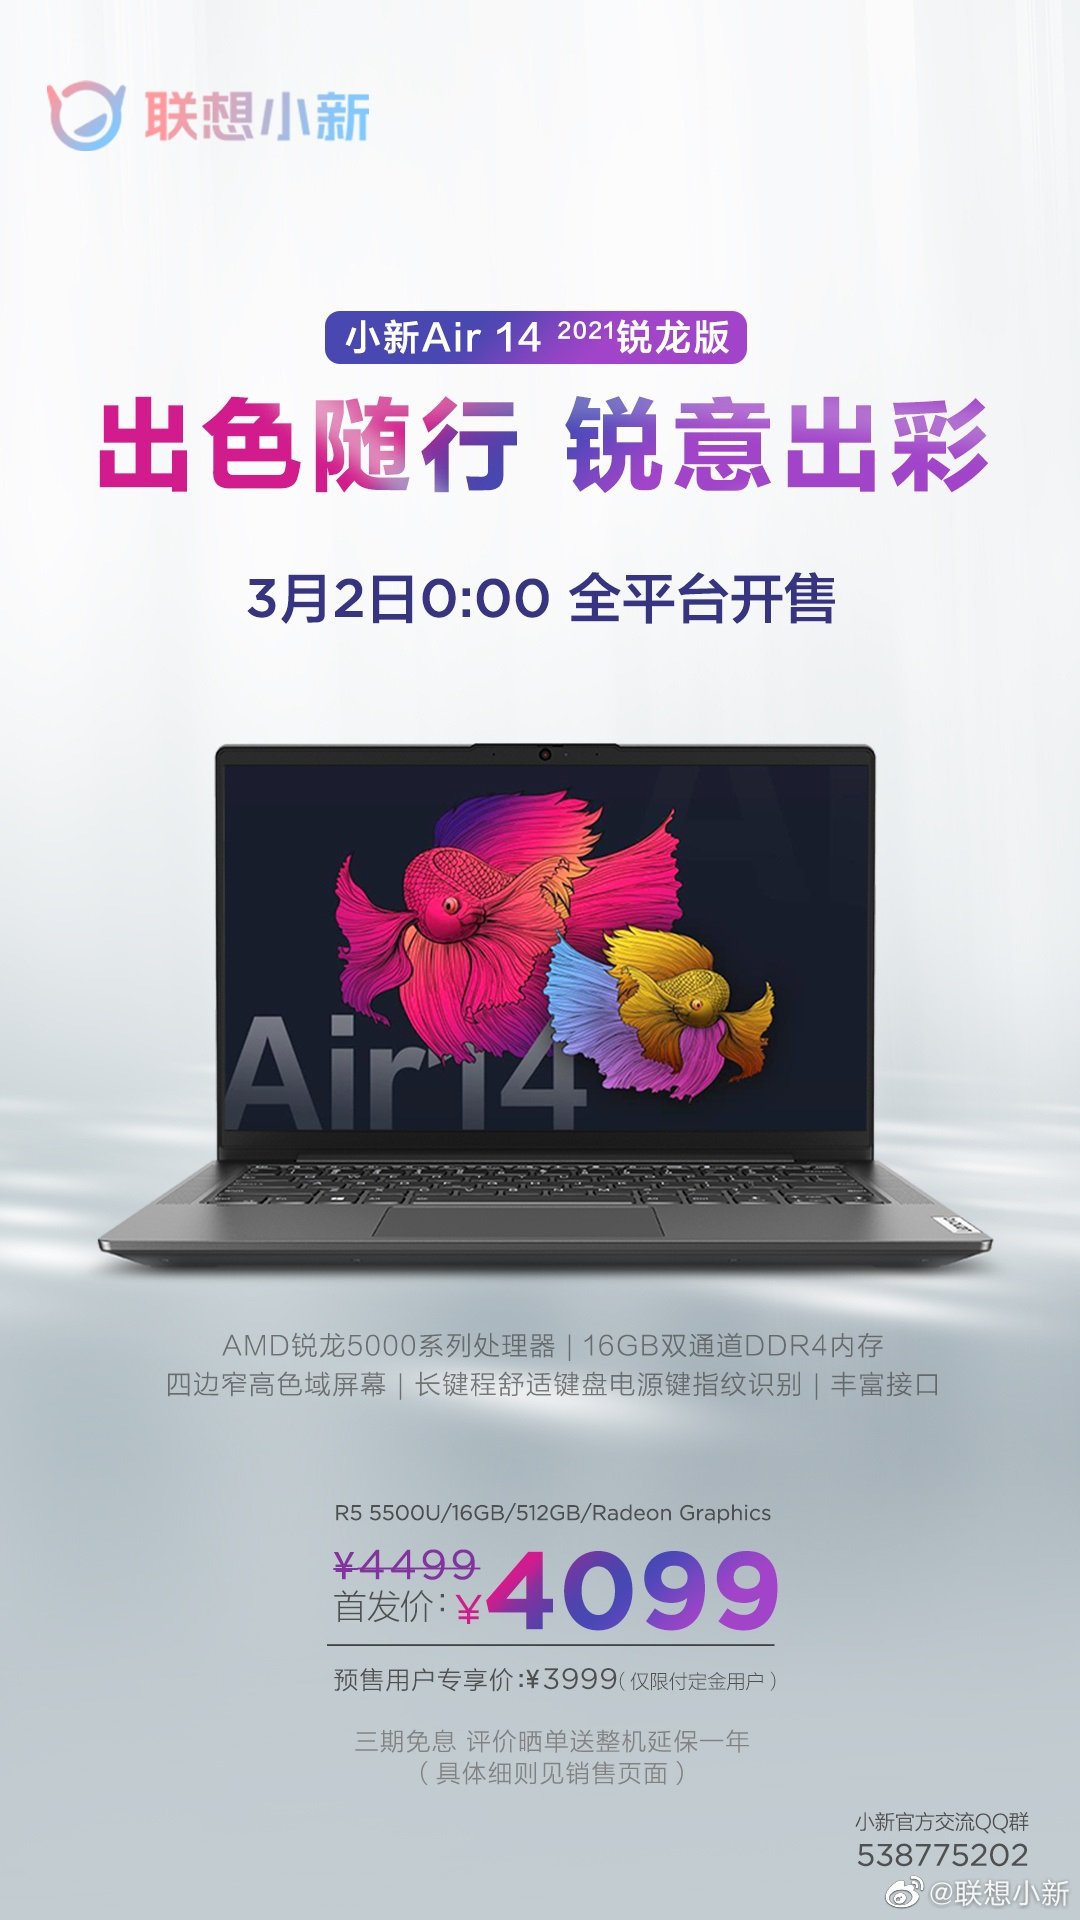 联想小新Air 14 2021 Ryzen Edition在中国发售